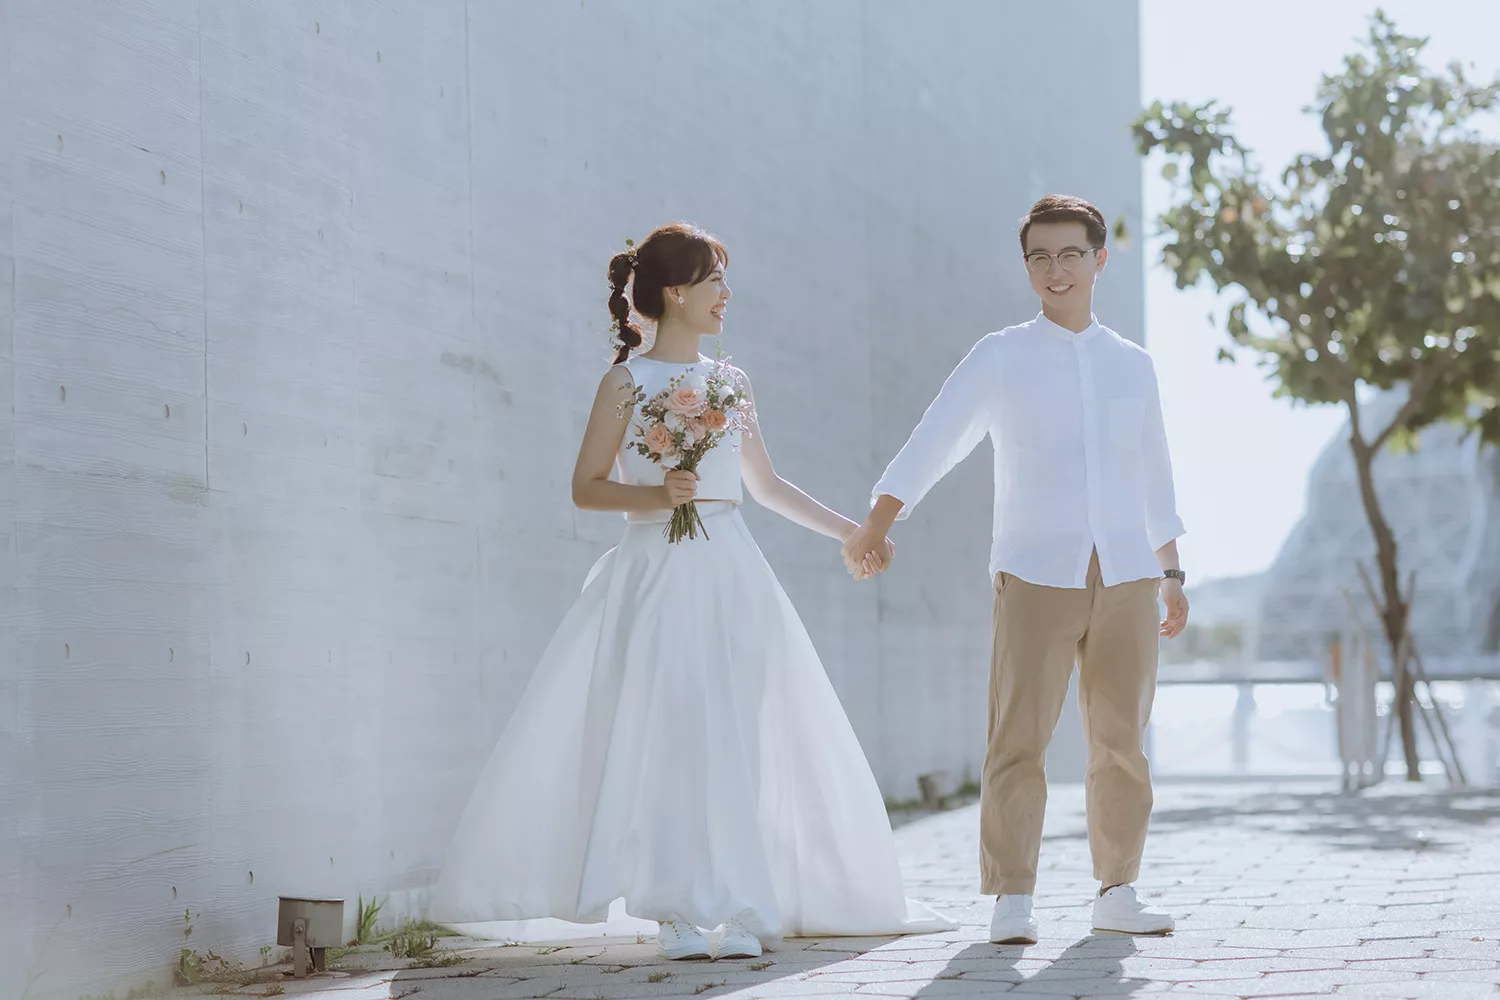 婚紗小白鞋是許多新人必備的時尚單品。